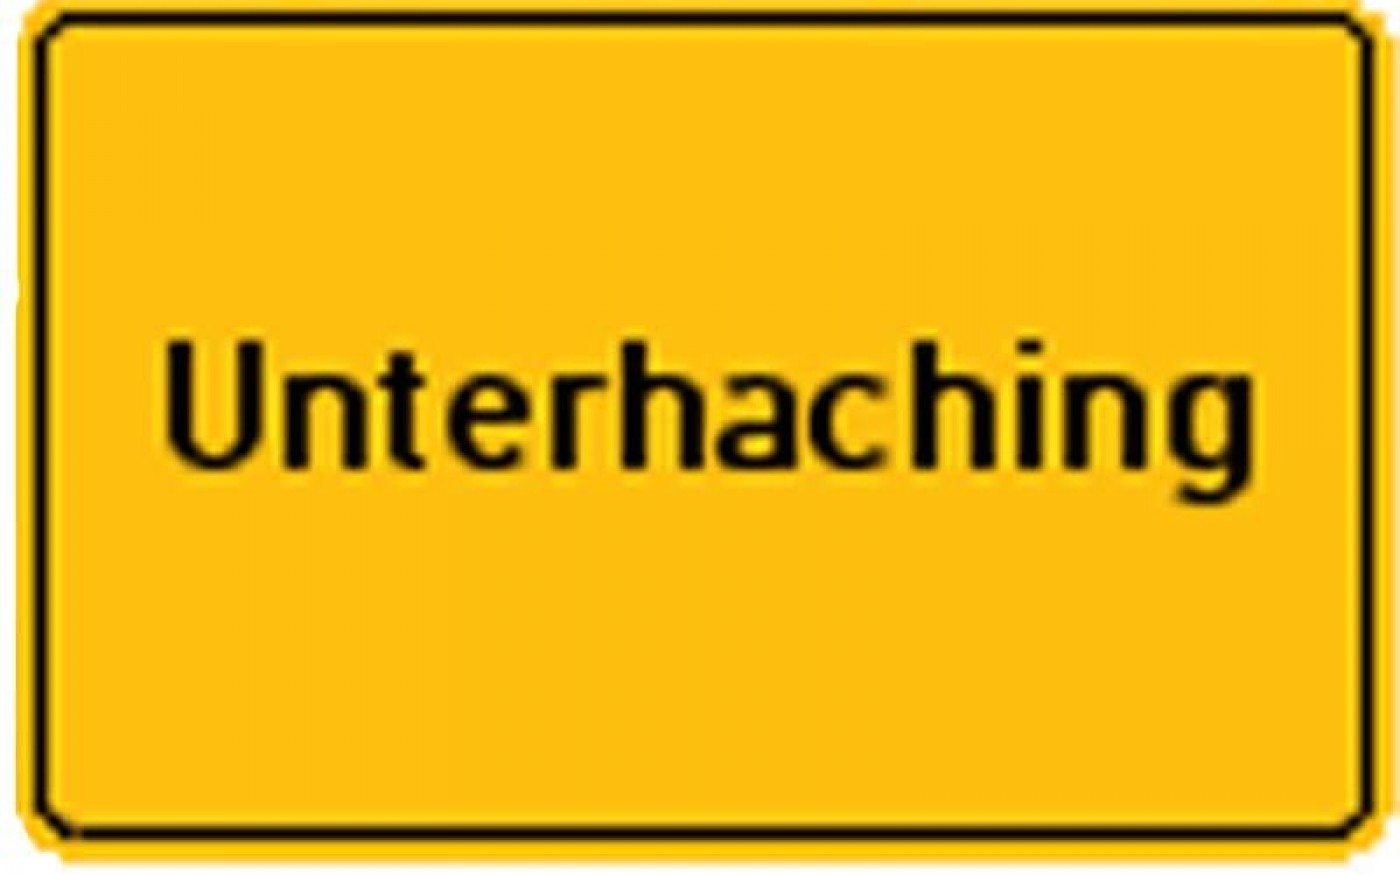 Unterhaching2